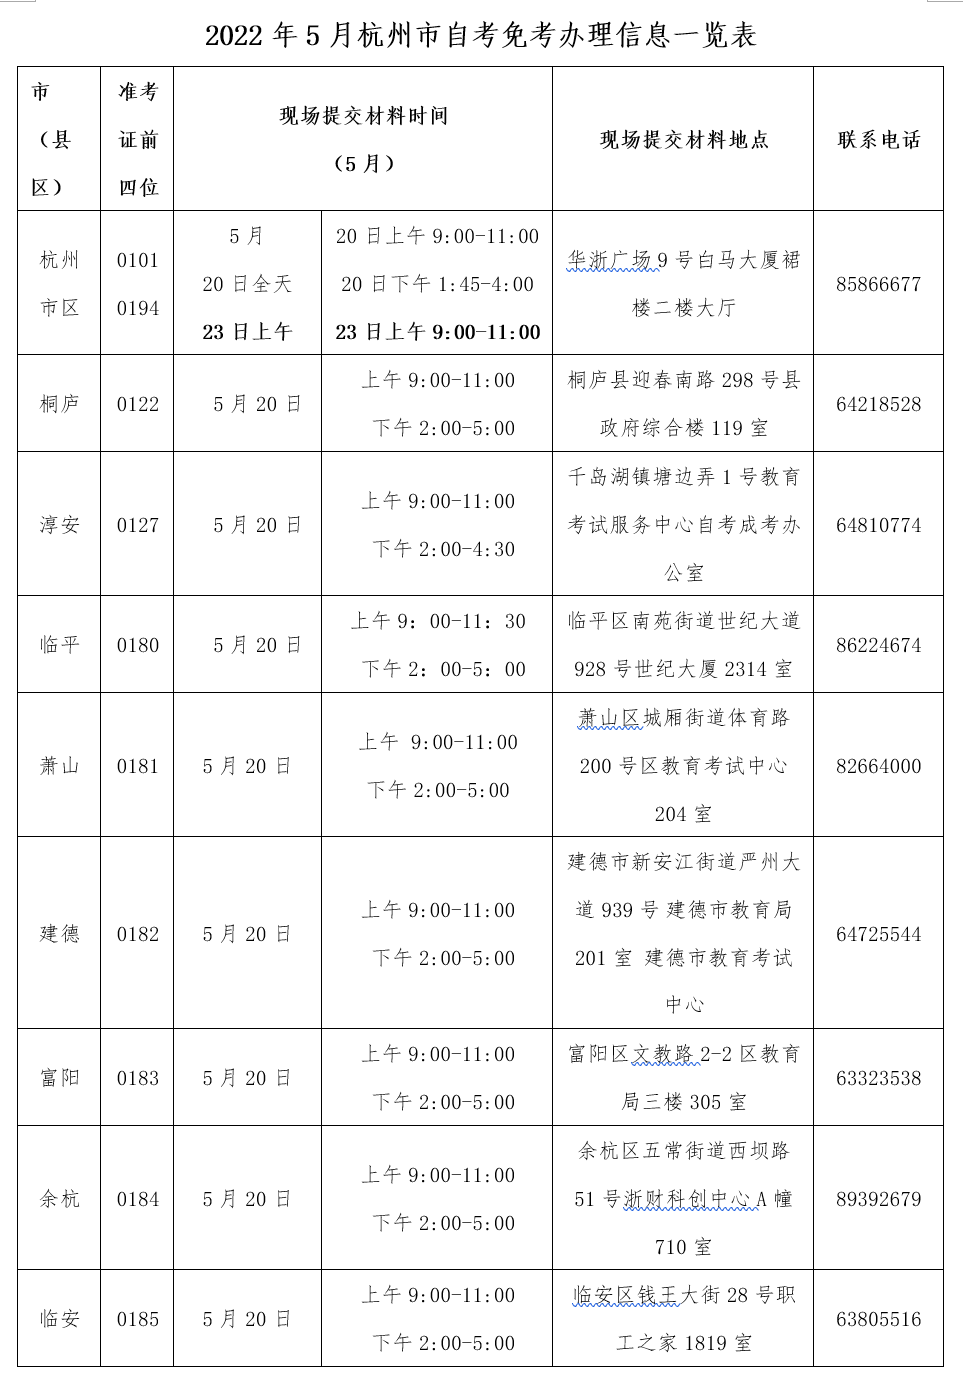 2022年5月杭州自考免考现场提交材料时间、地点